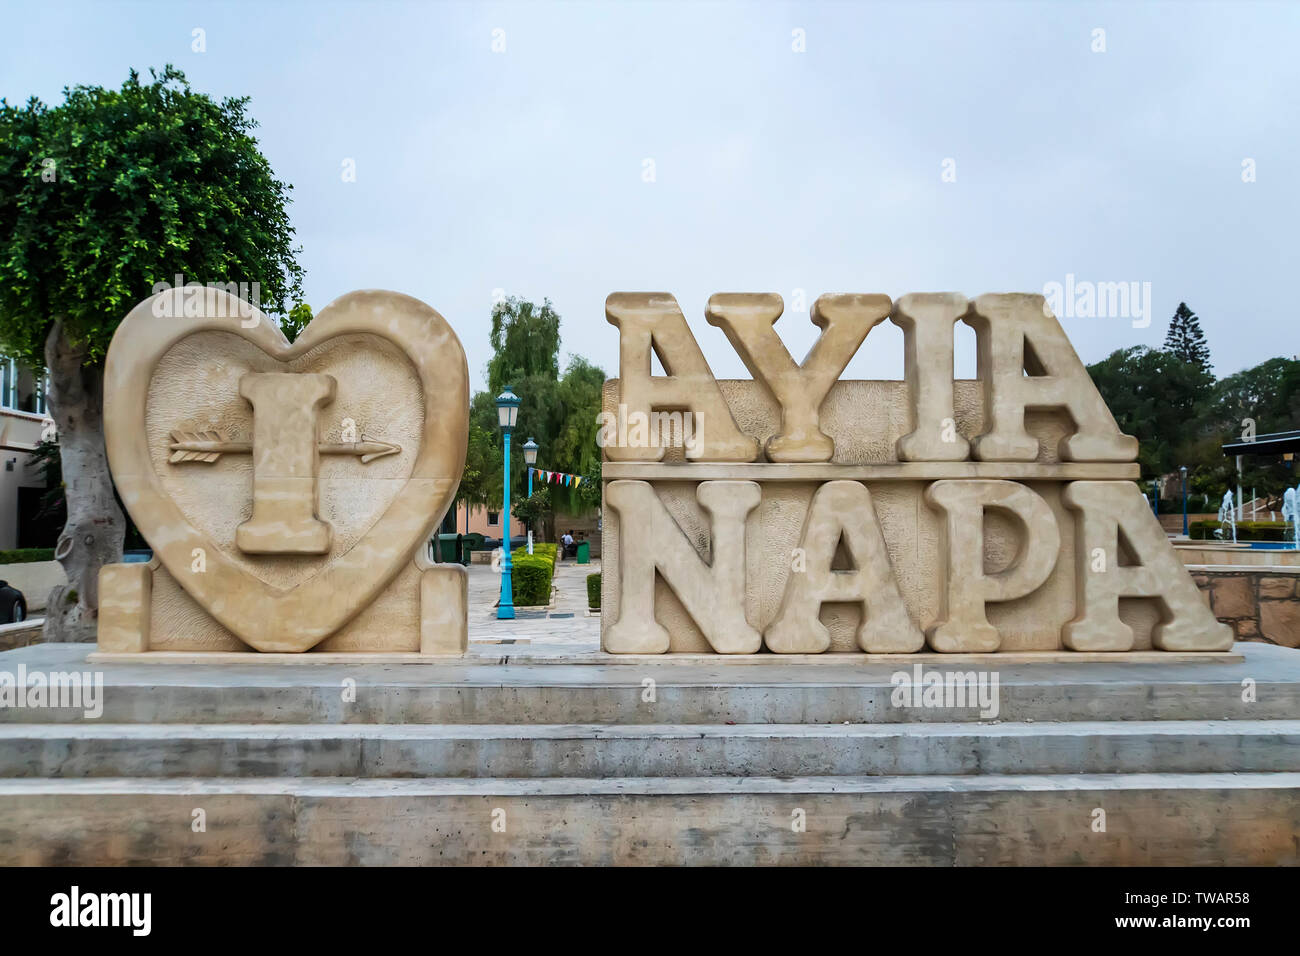 Ottobre 20, 2019. Ayia Napa, Cipro. Il nome della città di pietra sulla strada della cittadina di Ayia Napa. Foto Stock